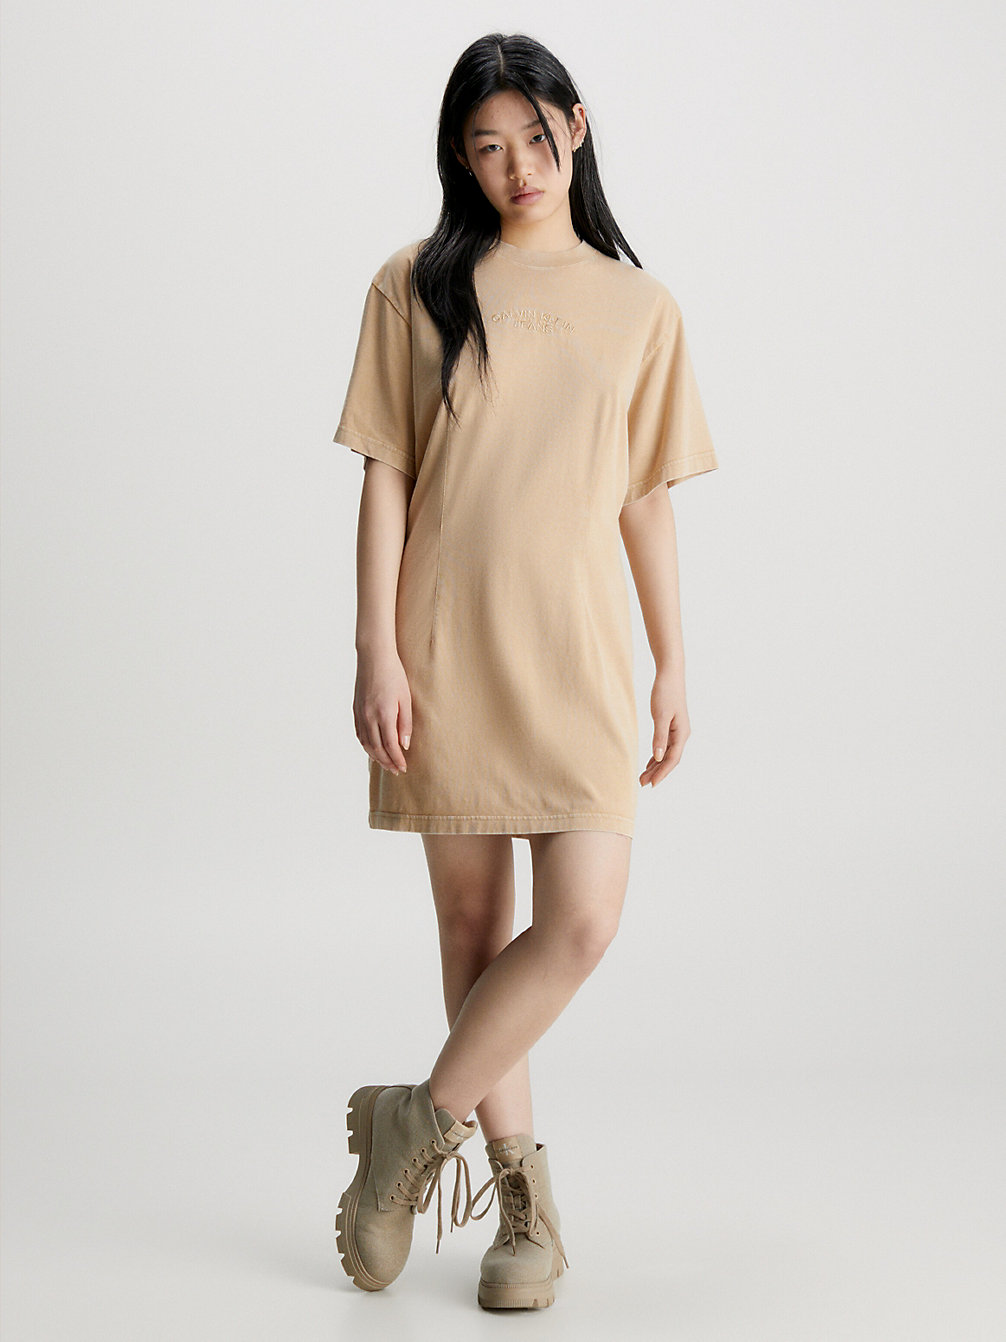 TRAVERTINE Washed Cotton T-Shirt Dress undefined women Calvin Klein